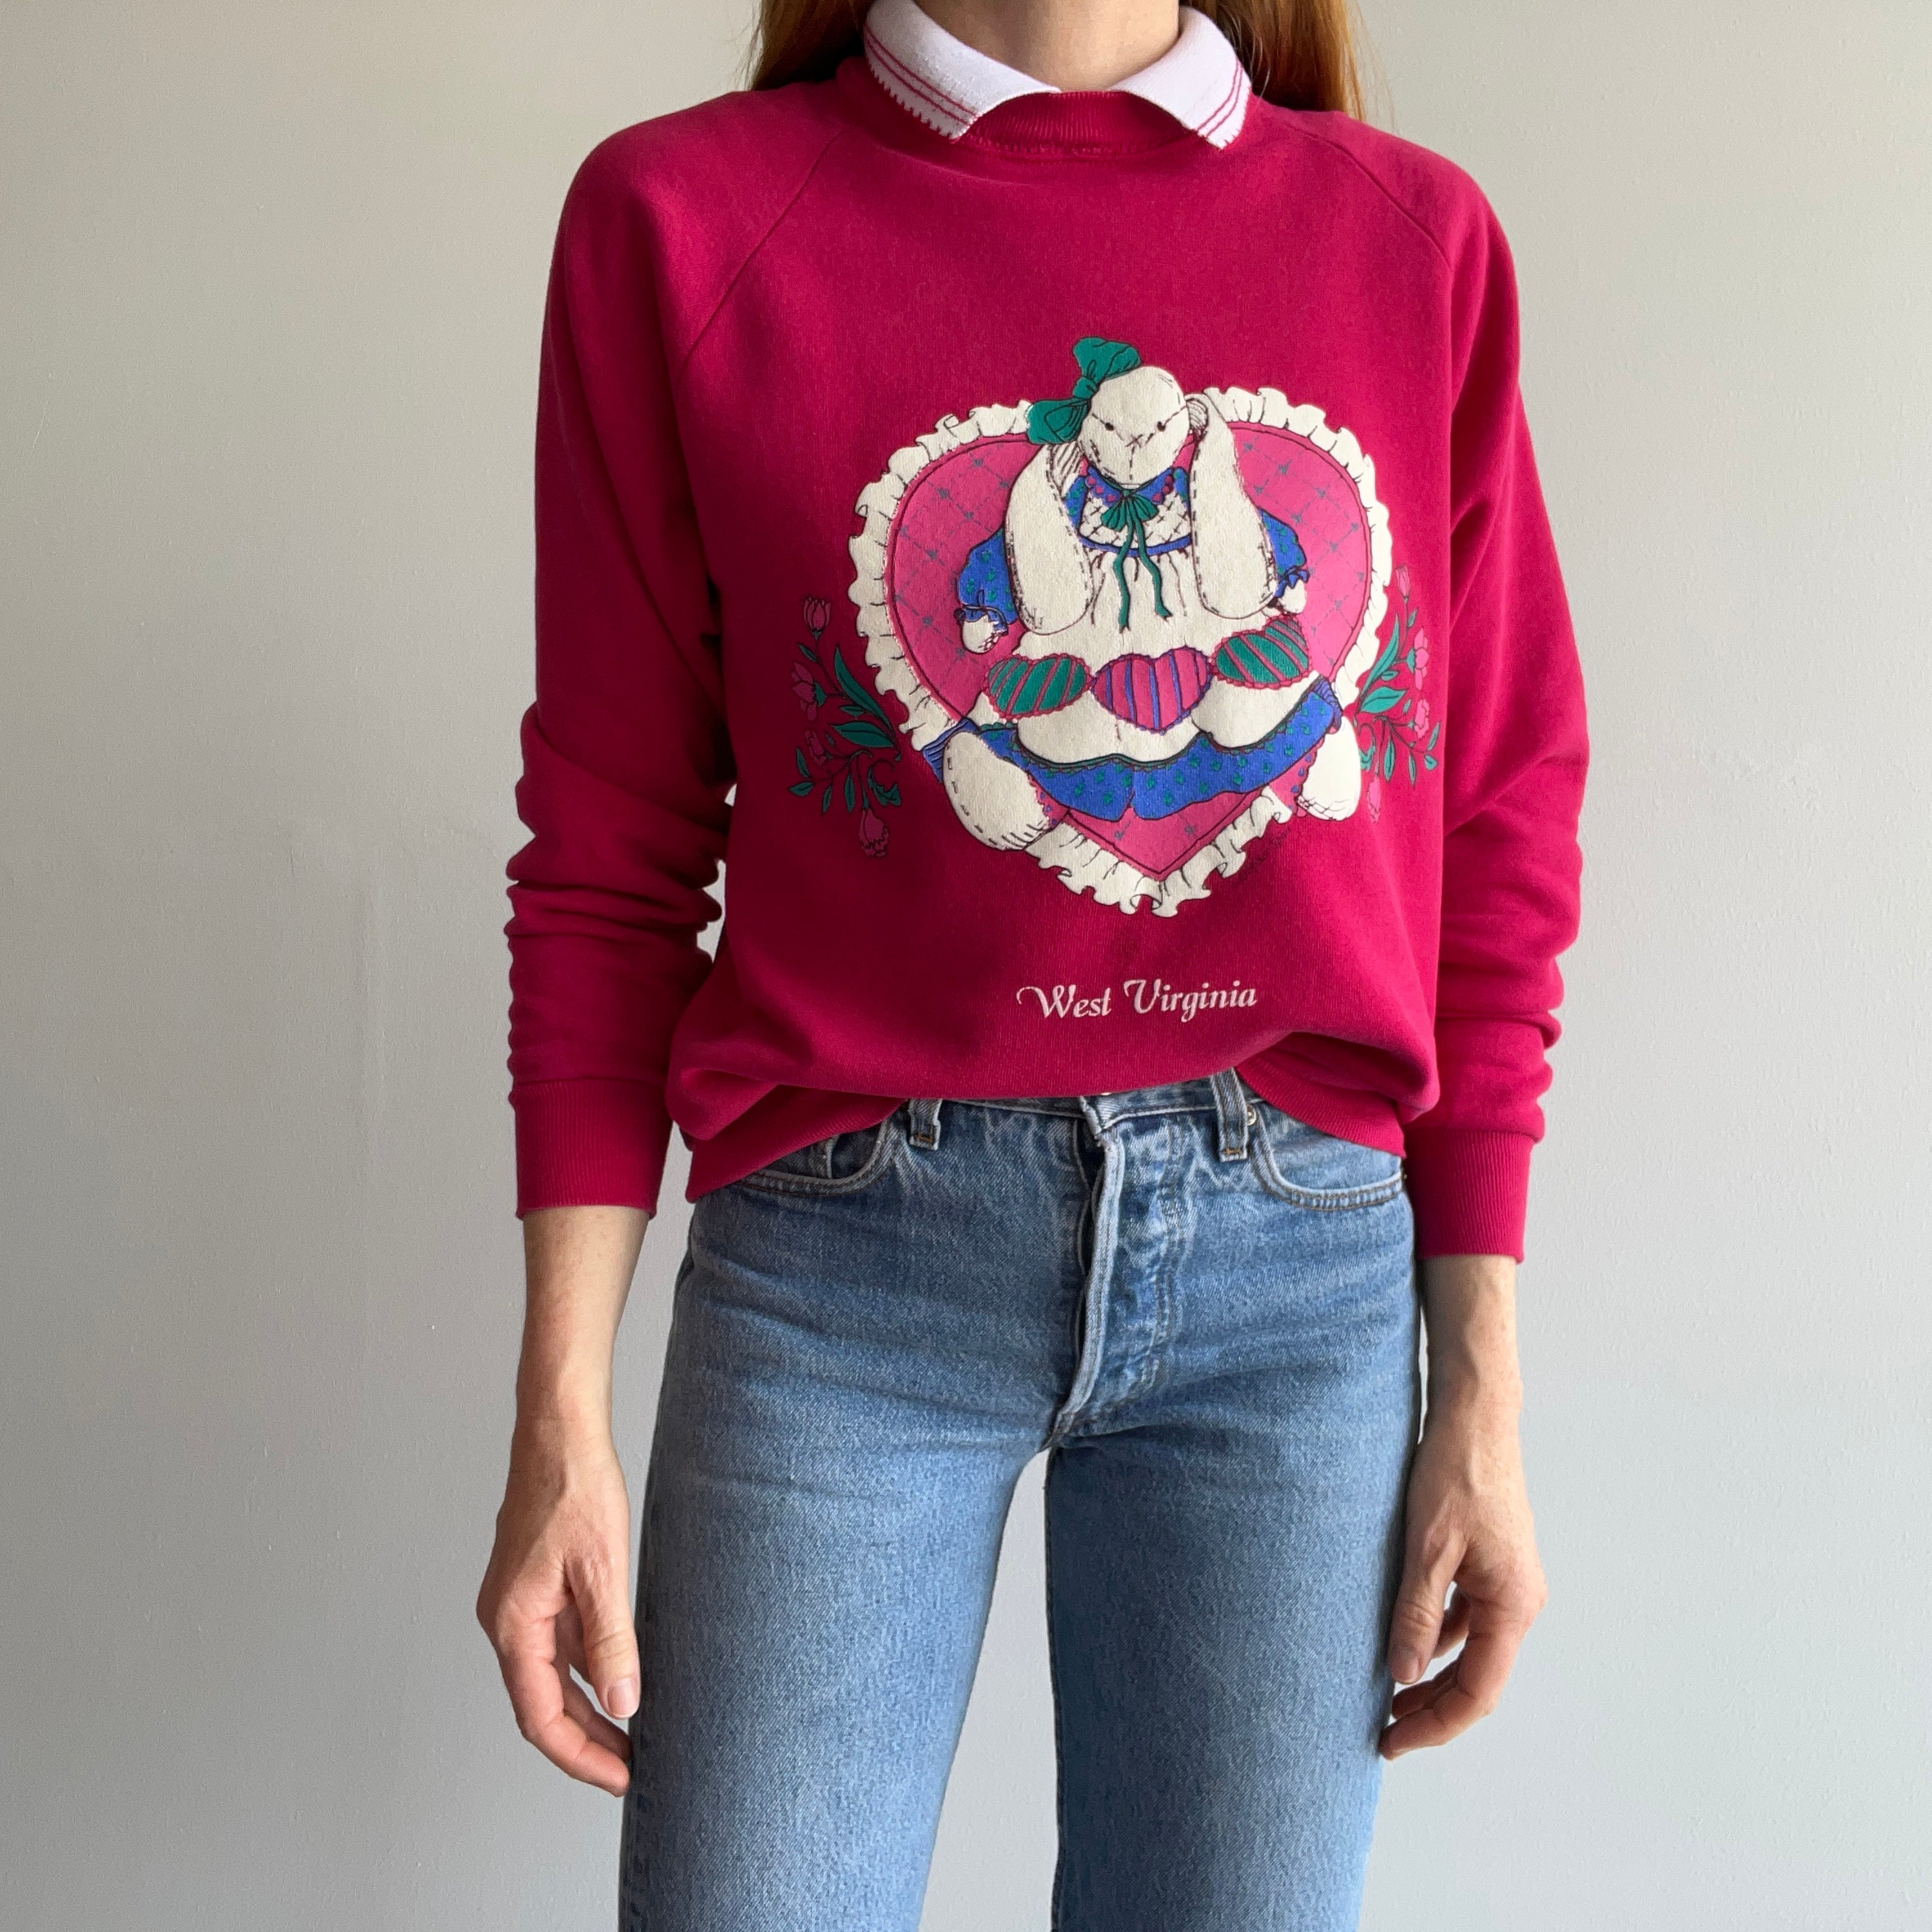 1980s West Virginia Bunny Sweatshirt of Someone's Dreams